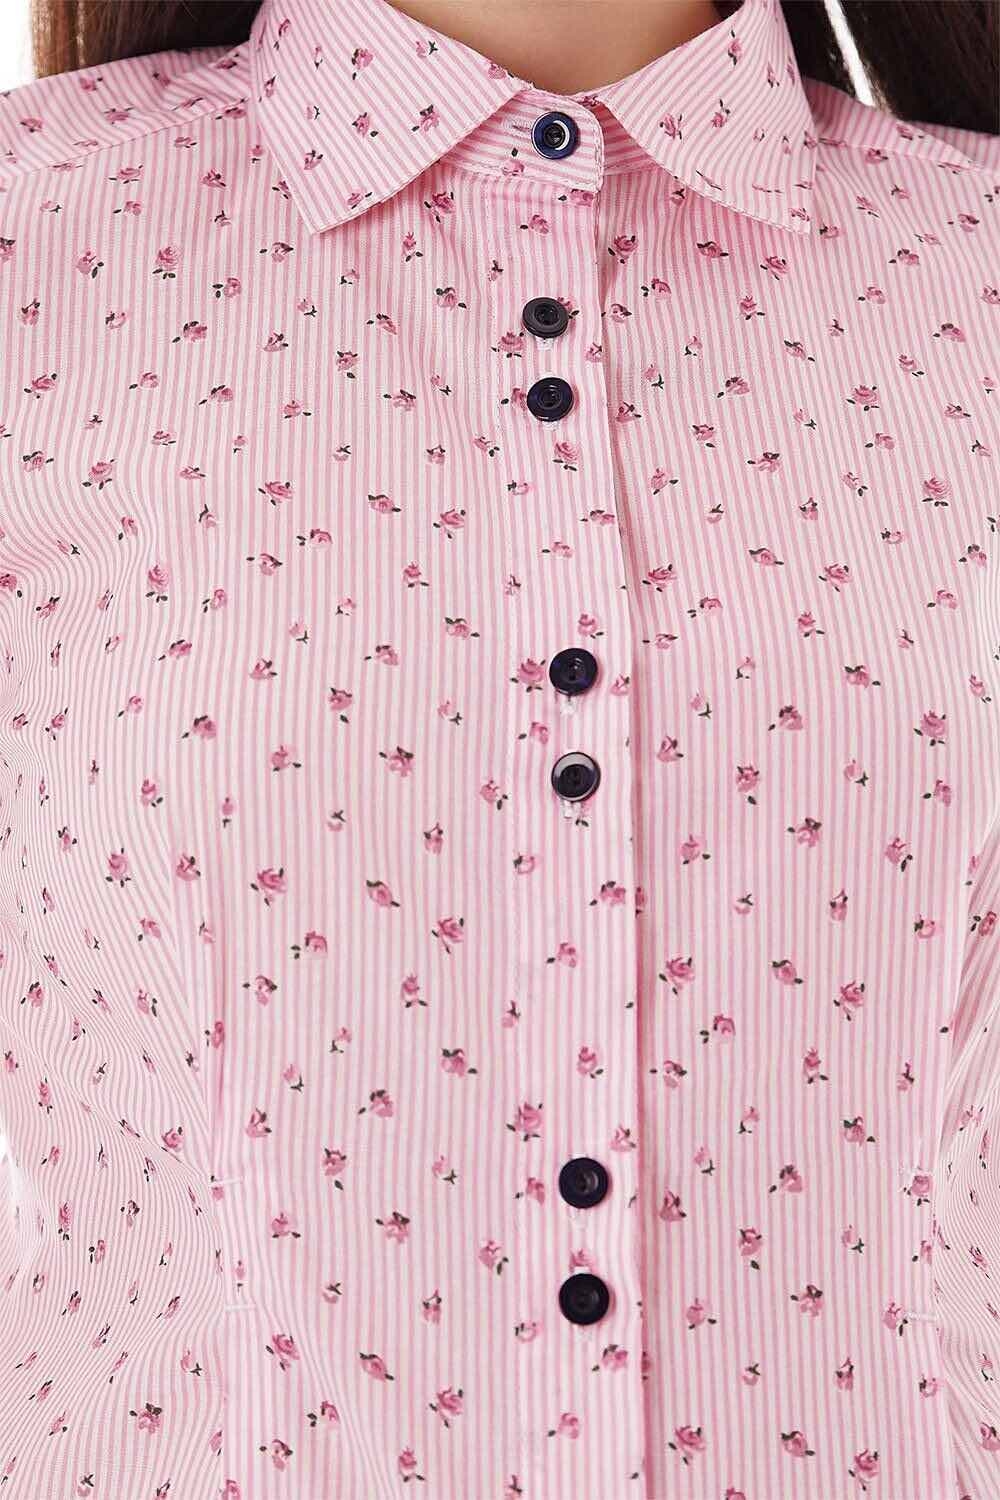 Блуза для беременных, будущих мам Розовый цветок 0